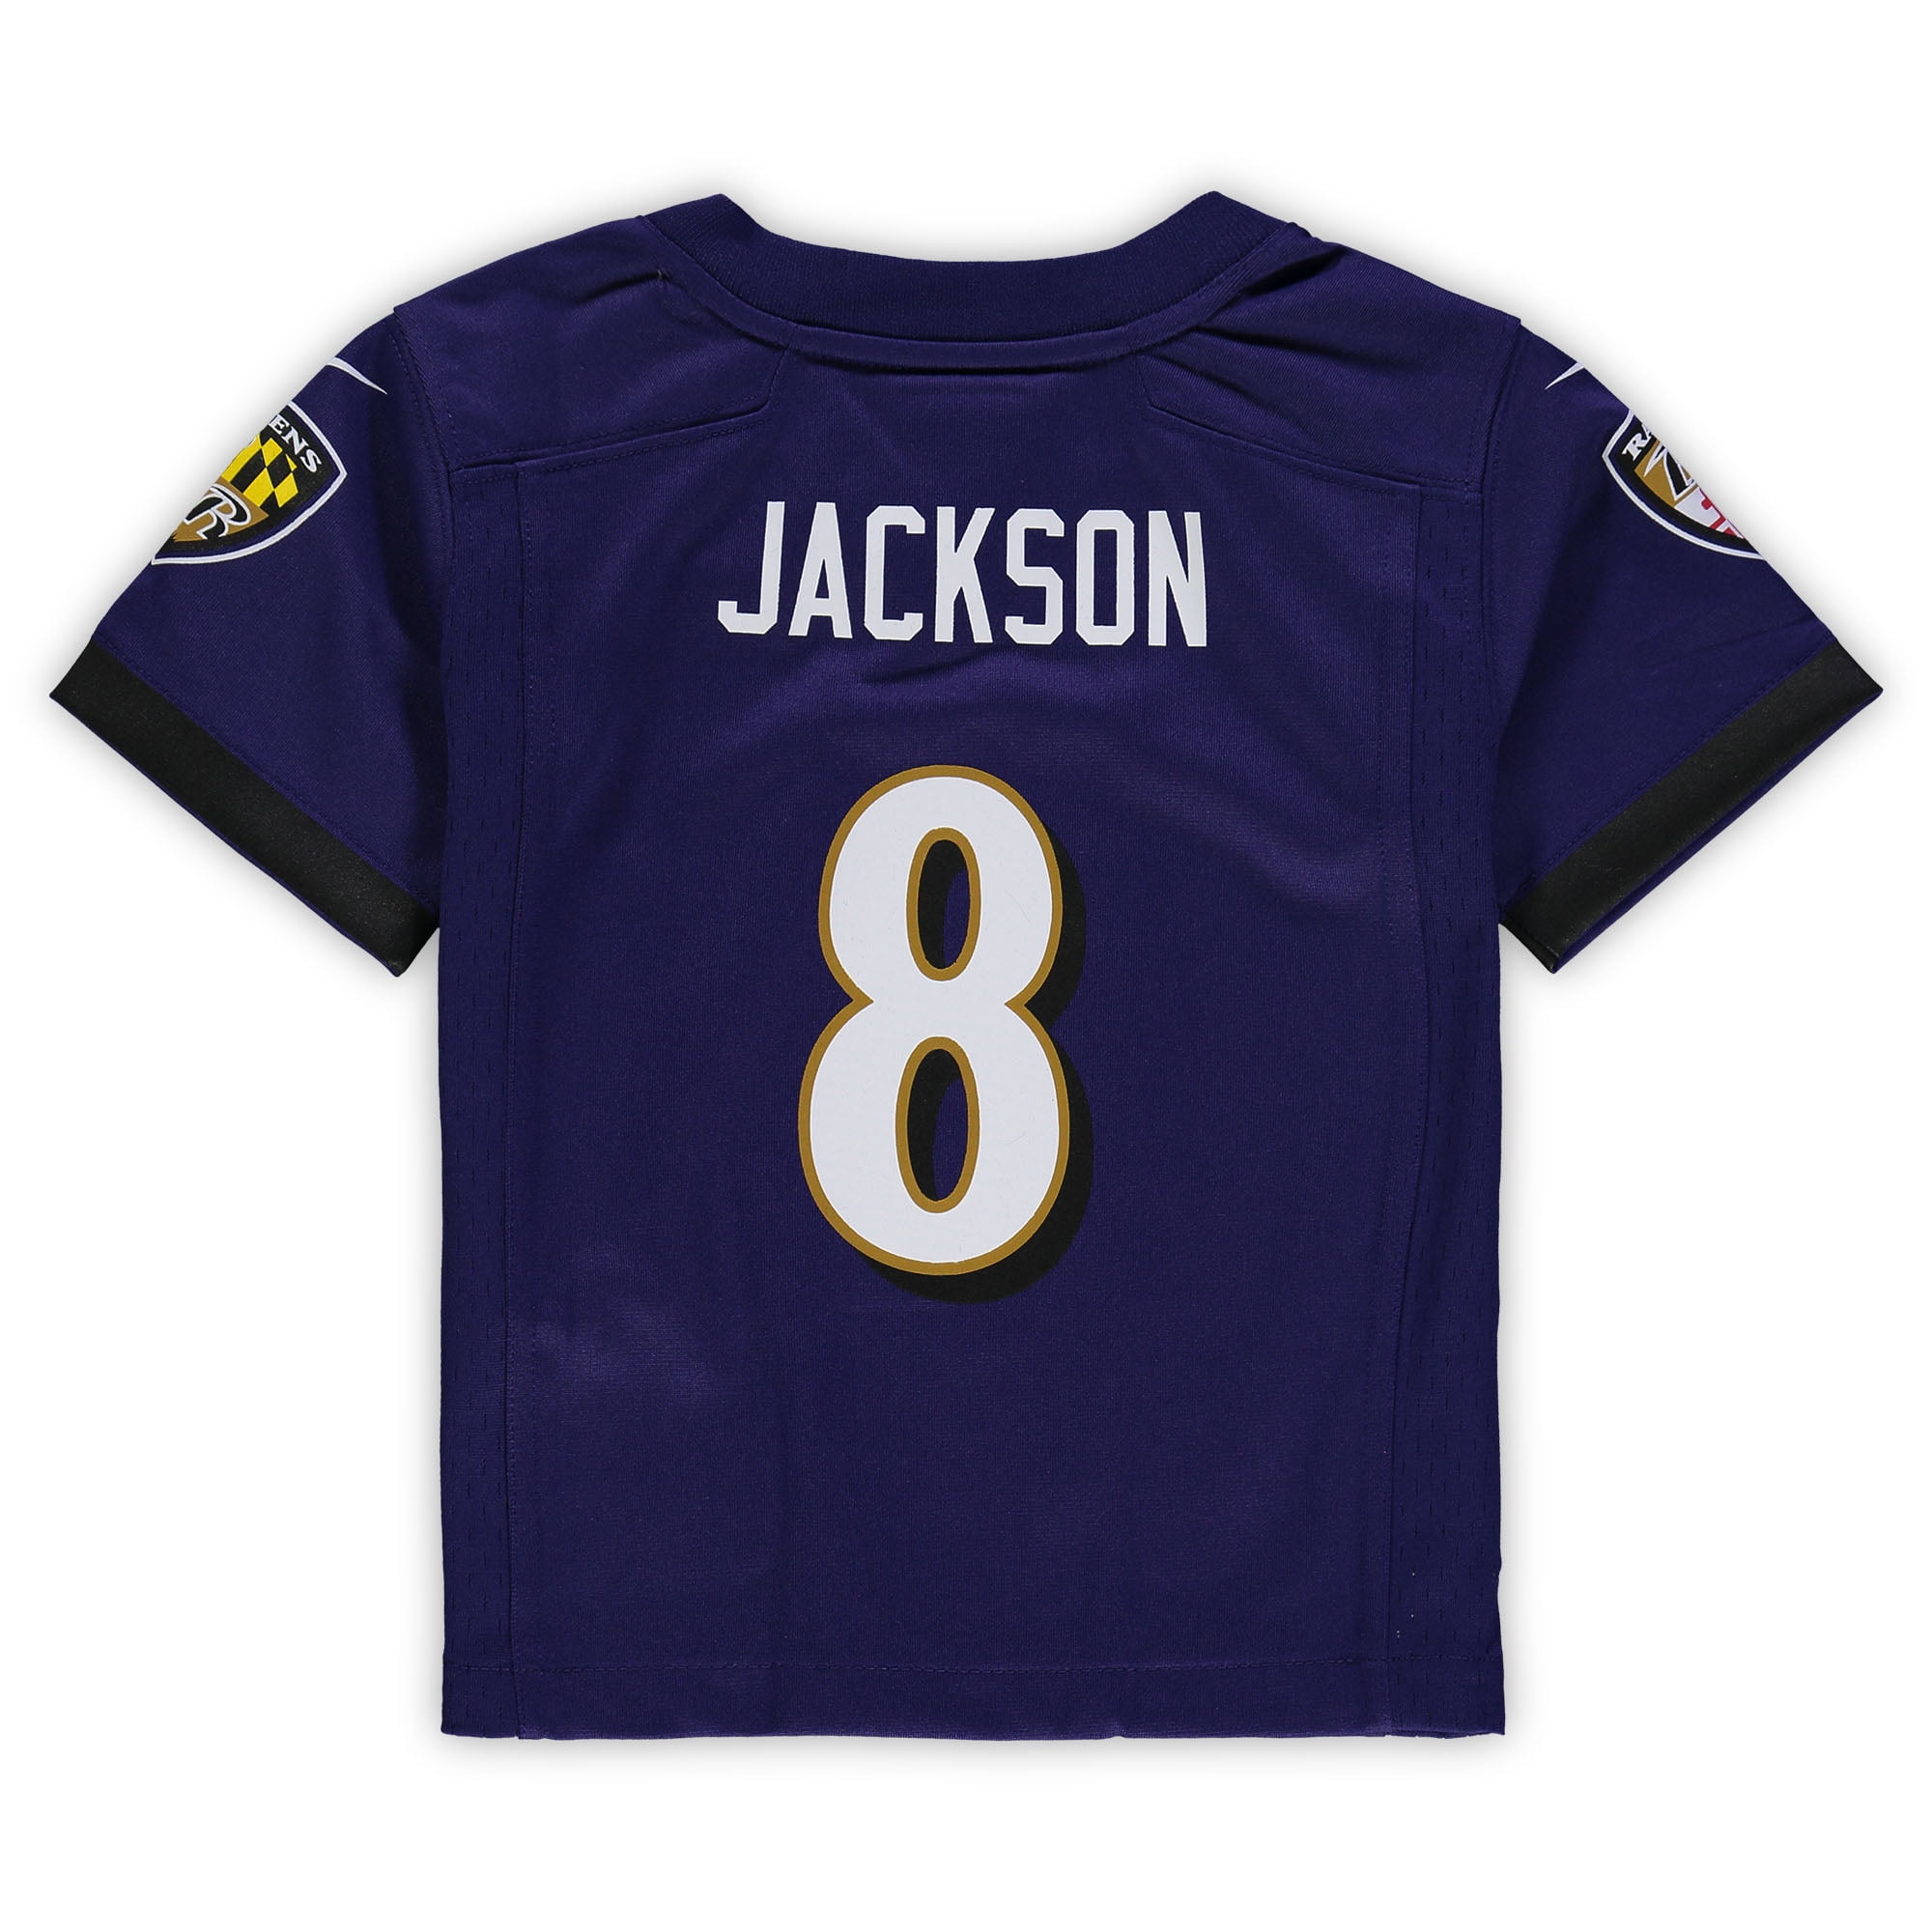 Toddler Nike Lamar Jackson Purple Baltimore Ravens Game Jersey